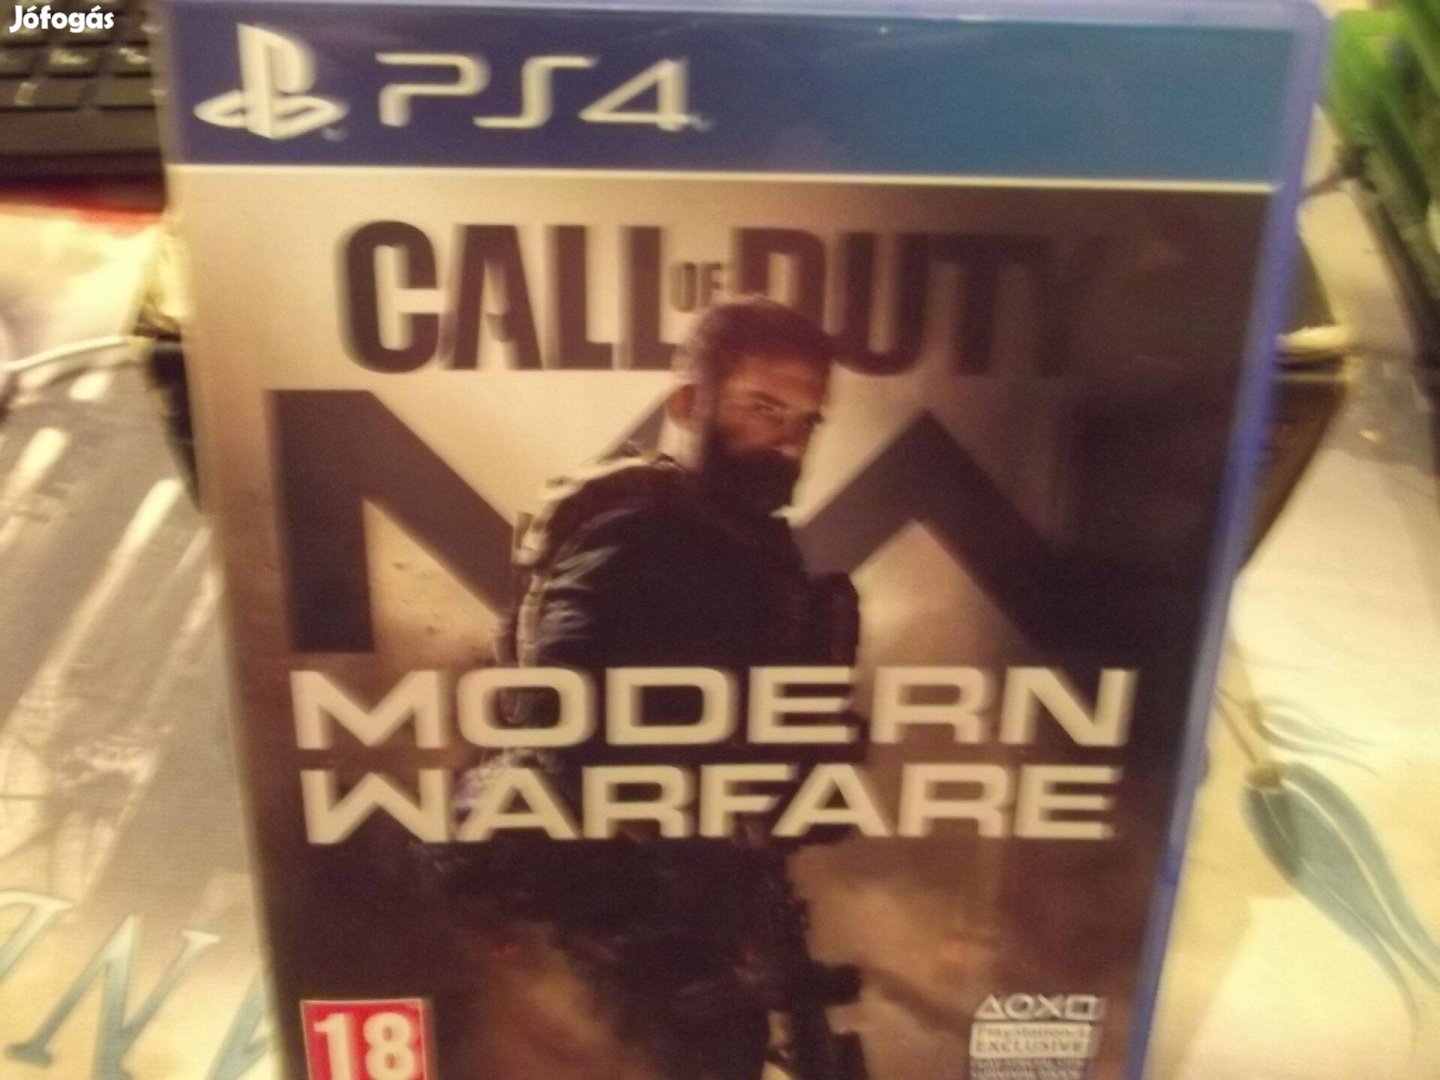 Ps4-150 Ps4 eredeti Játék : Call of Duty Modern Warfare ( karcmentes)